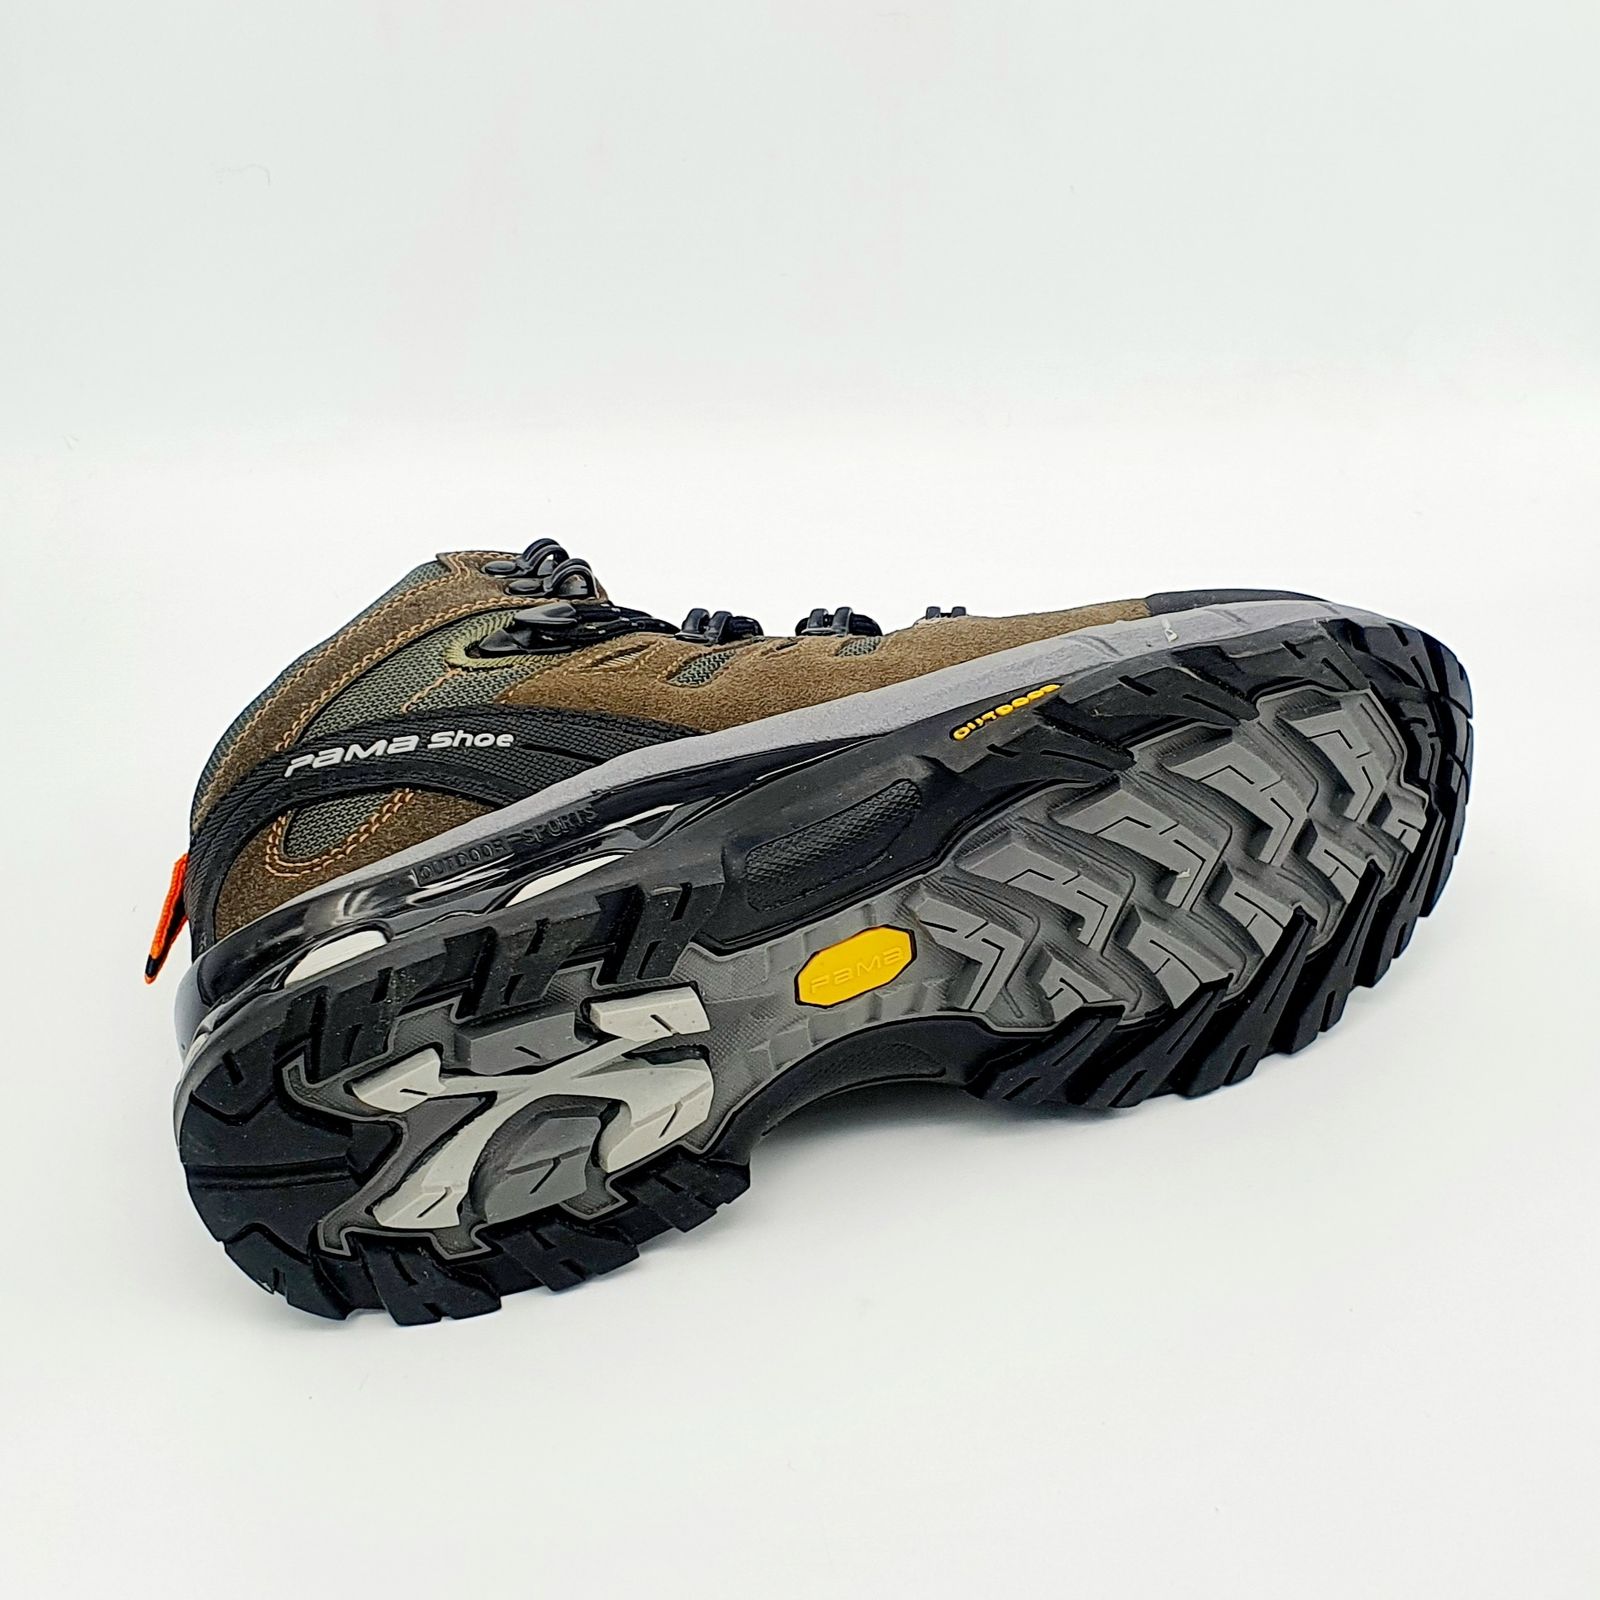 کفش کوهنوردی مردانه پاما مدل NBS-829 کد G1640 -  - 8